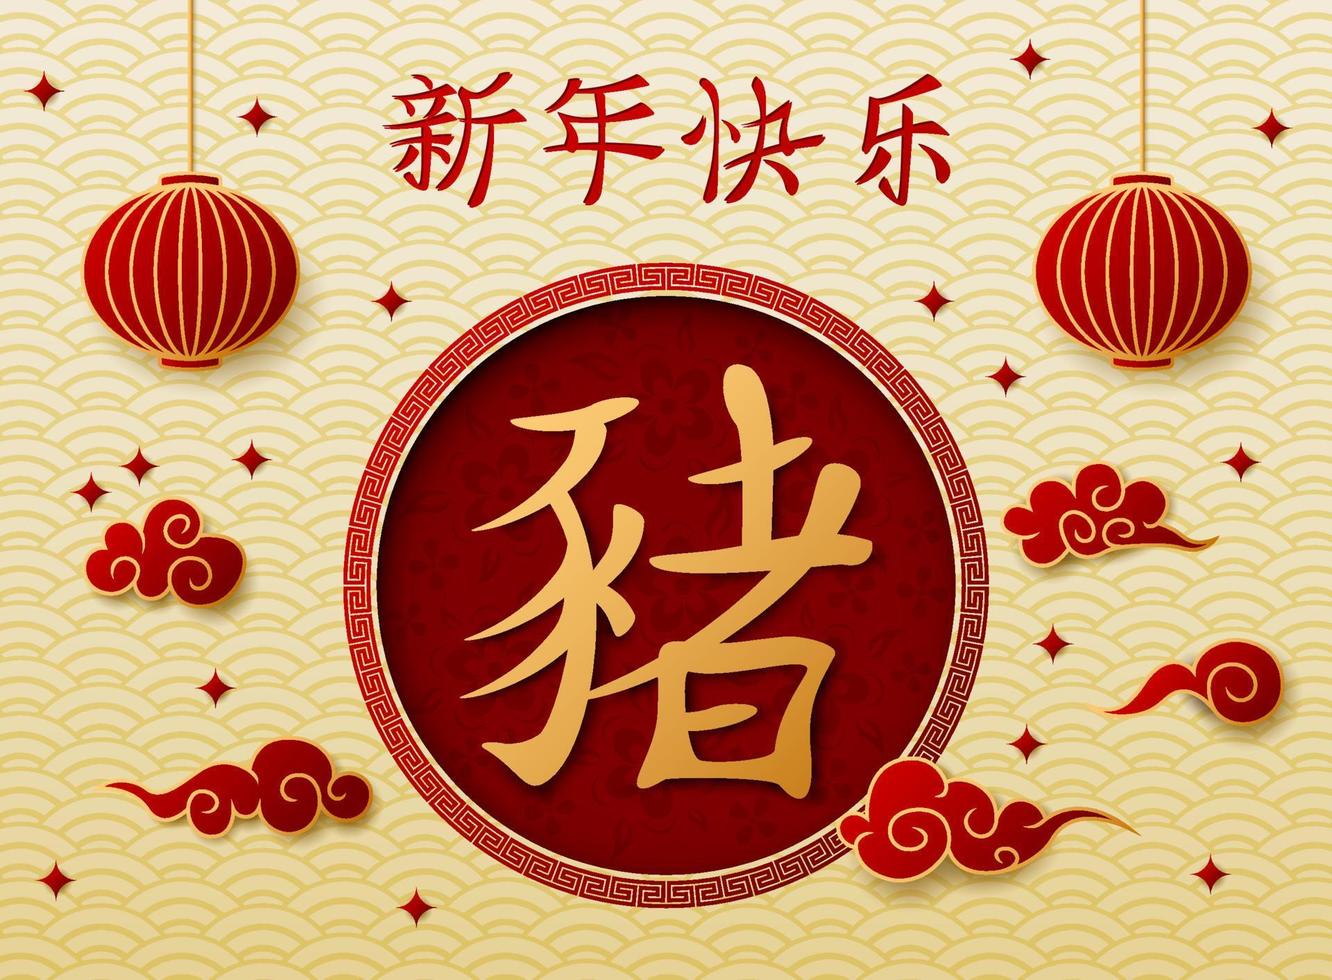 año nuevo chino con linternas chinas colgando vector